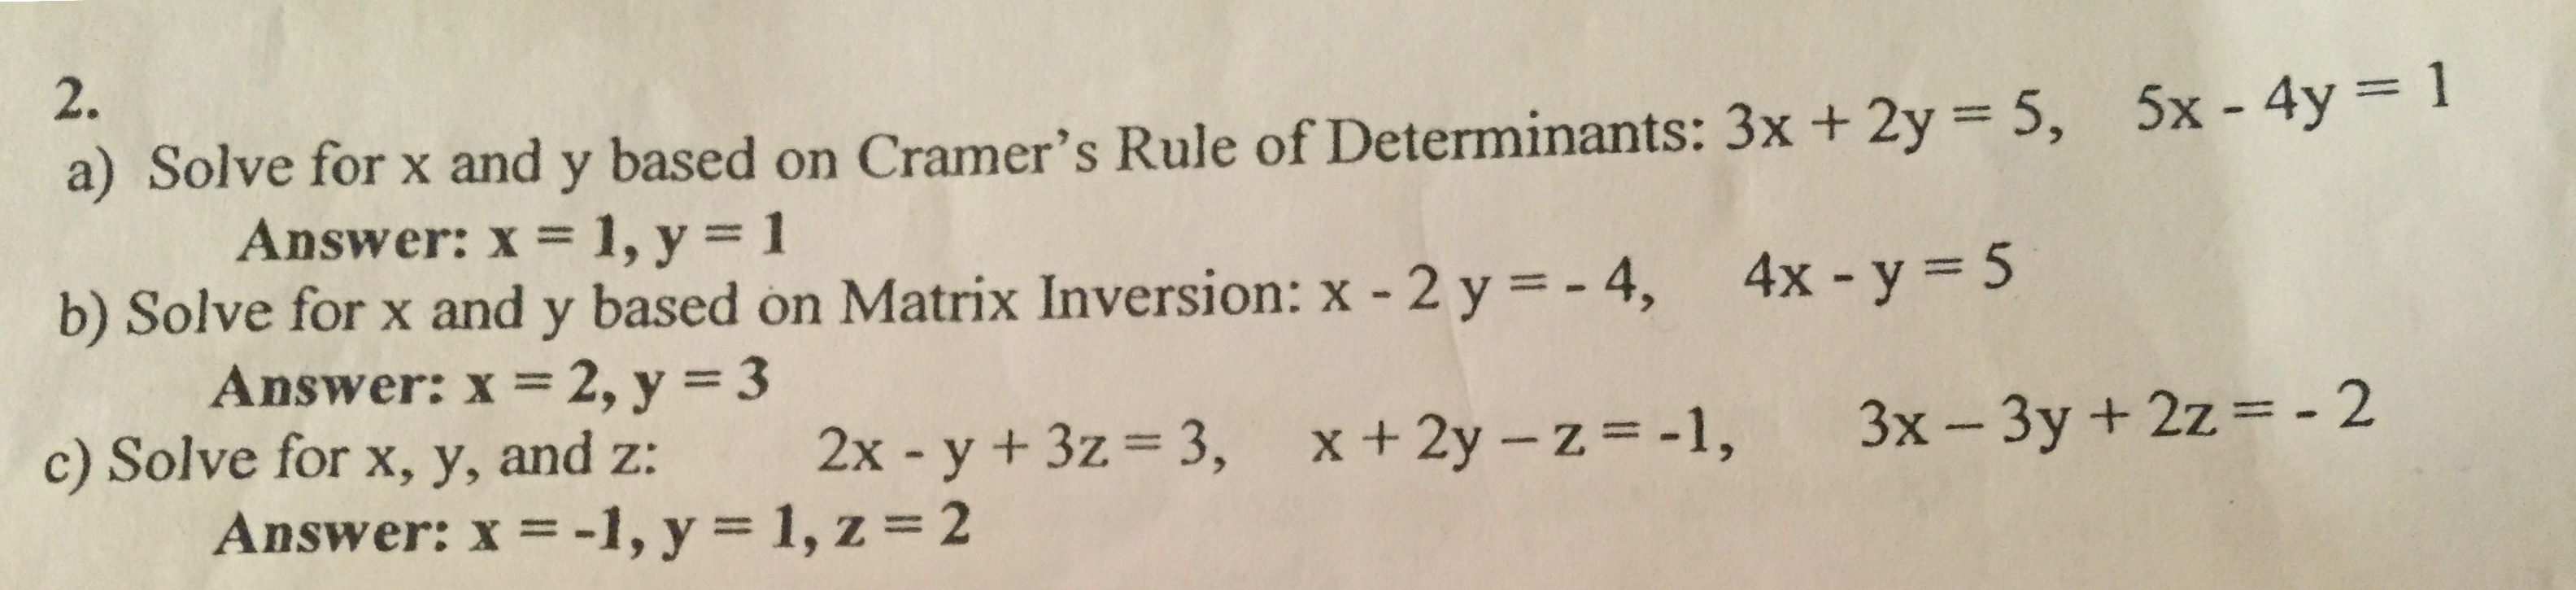 2.
5x -4y
a) Solve for x and y based on Cramer's Rule of Determinants: 3x + 2y 5,
Answer: x 1, y = 1
b) Solve for x and y based on Matrix Inversion: x - 2 y = - 4, 4x y = 5
Answer: x 2, y = 3
c) Solve for x, y, and z:
Answer: x = -1, y = 1, z = 2
3x-3y + 2z= - 2
x+2y - z-1,
3,
2x - y + 3z
